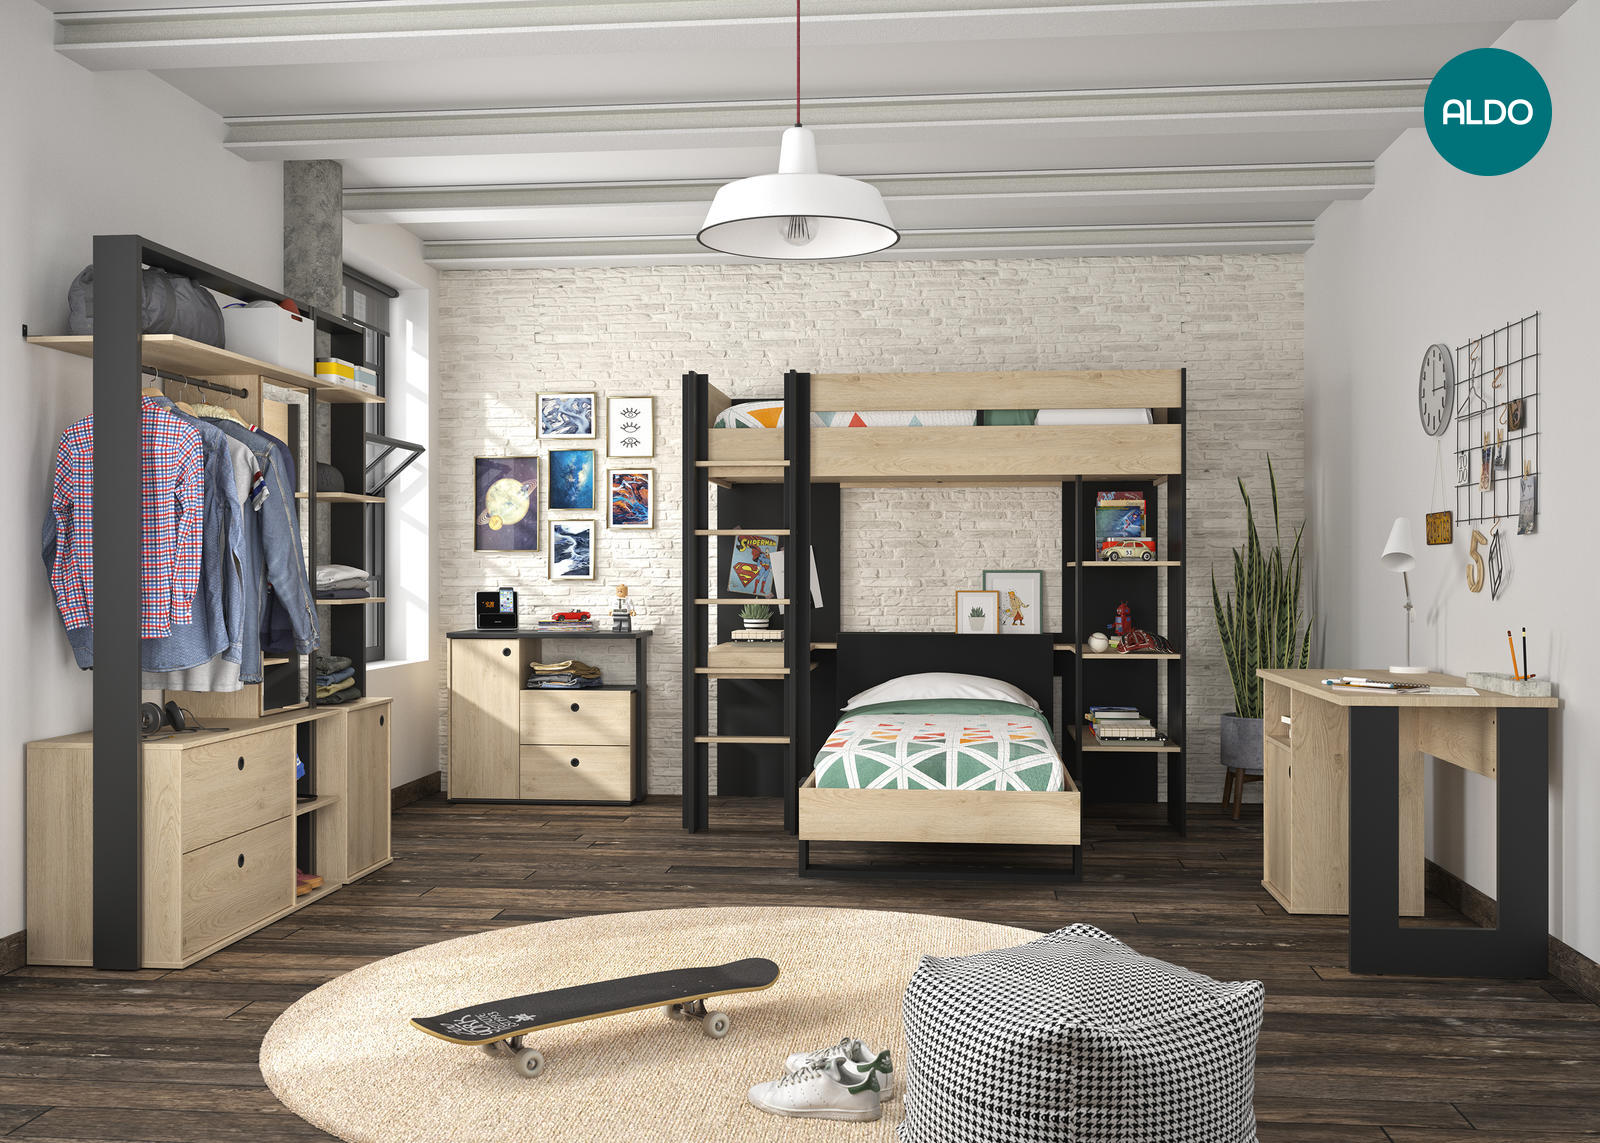 Detská izba pre dve deti v trendy dizajne - kolekcia Duplex